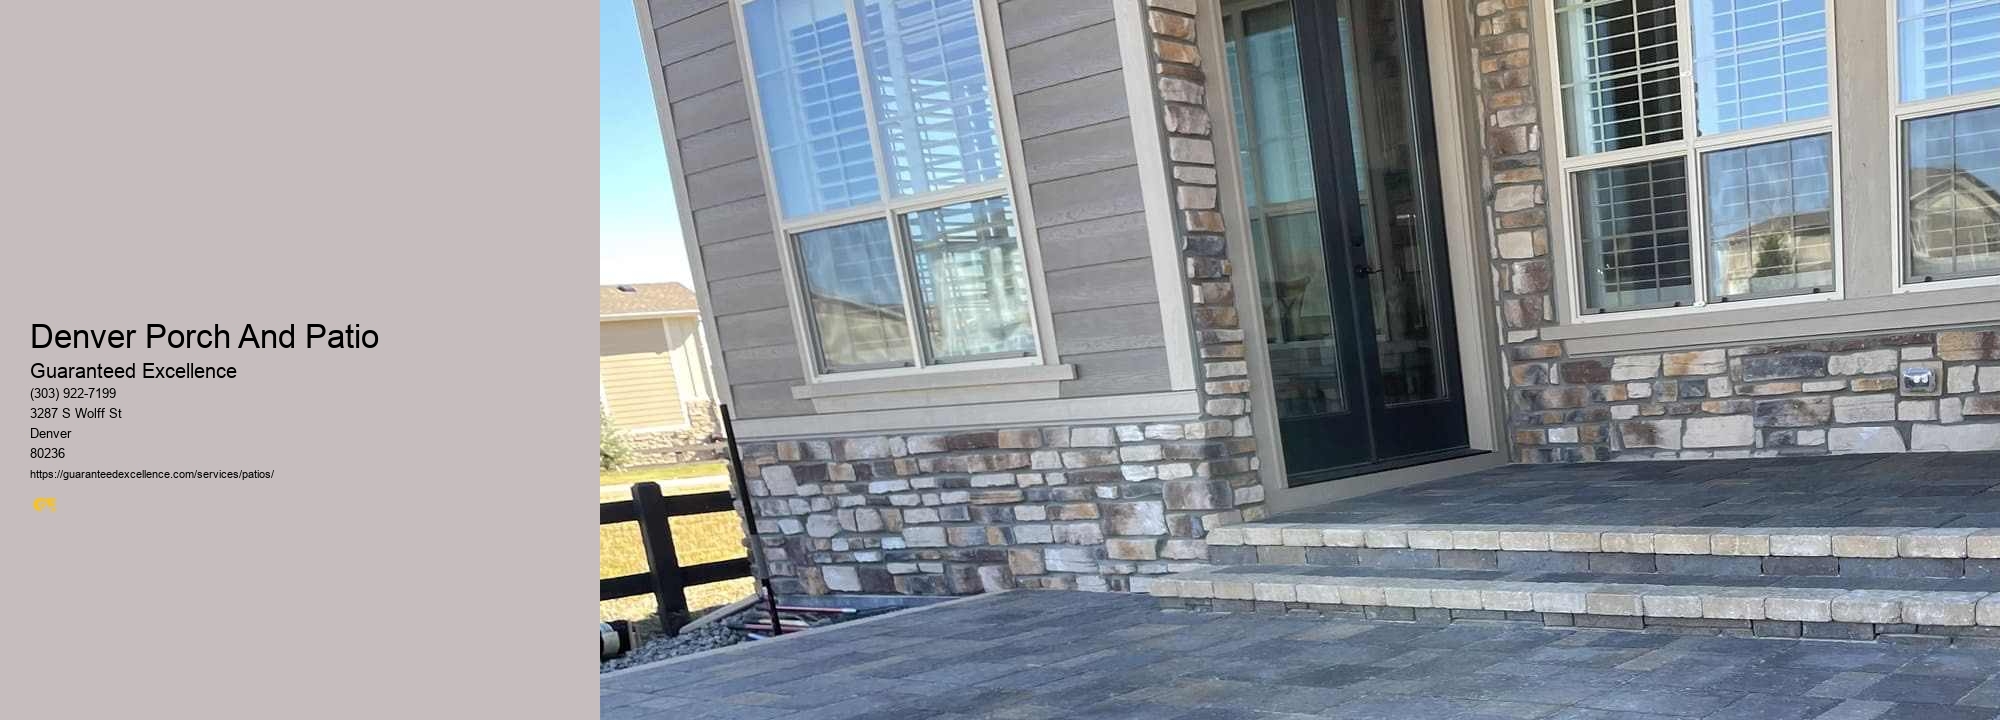 Denver Porch And Patio